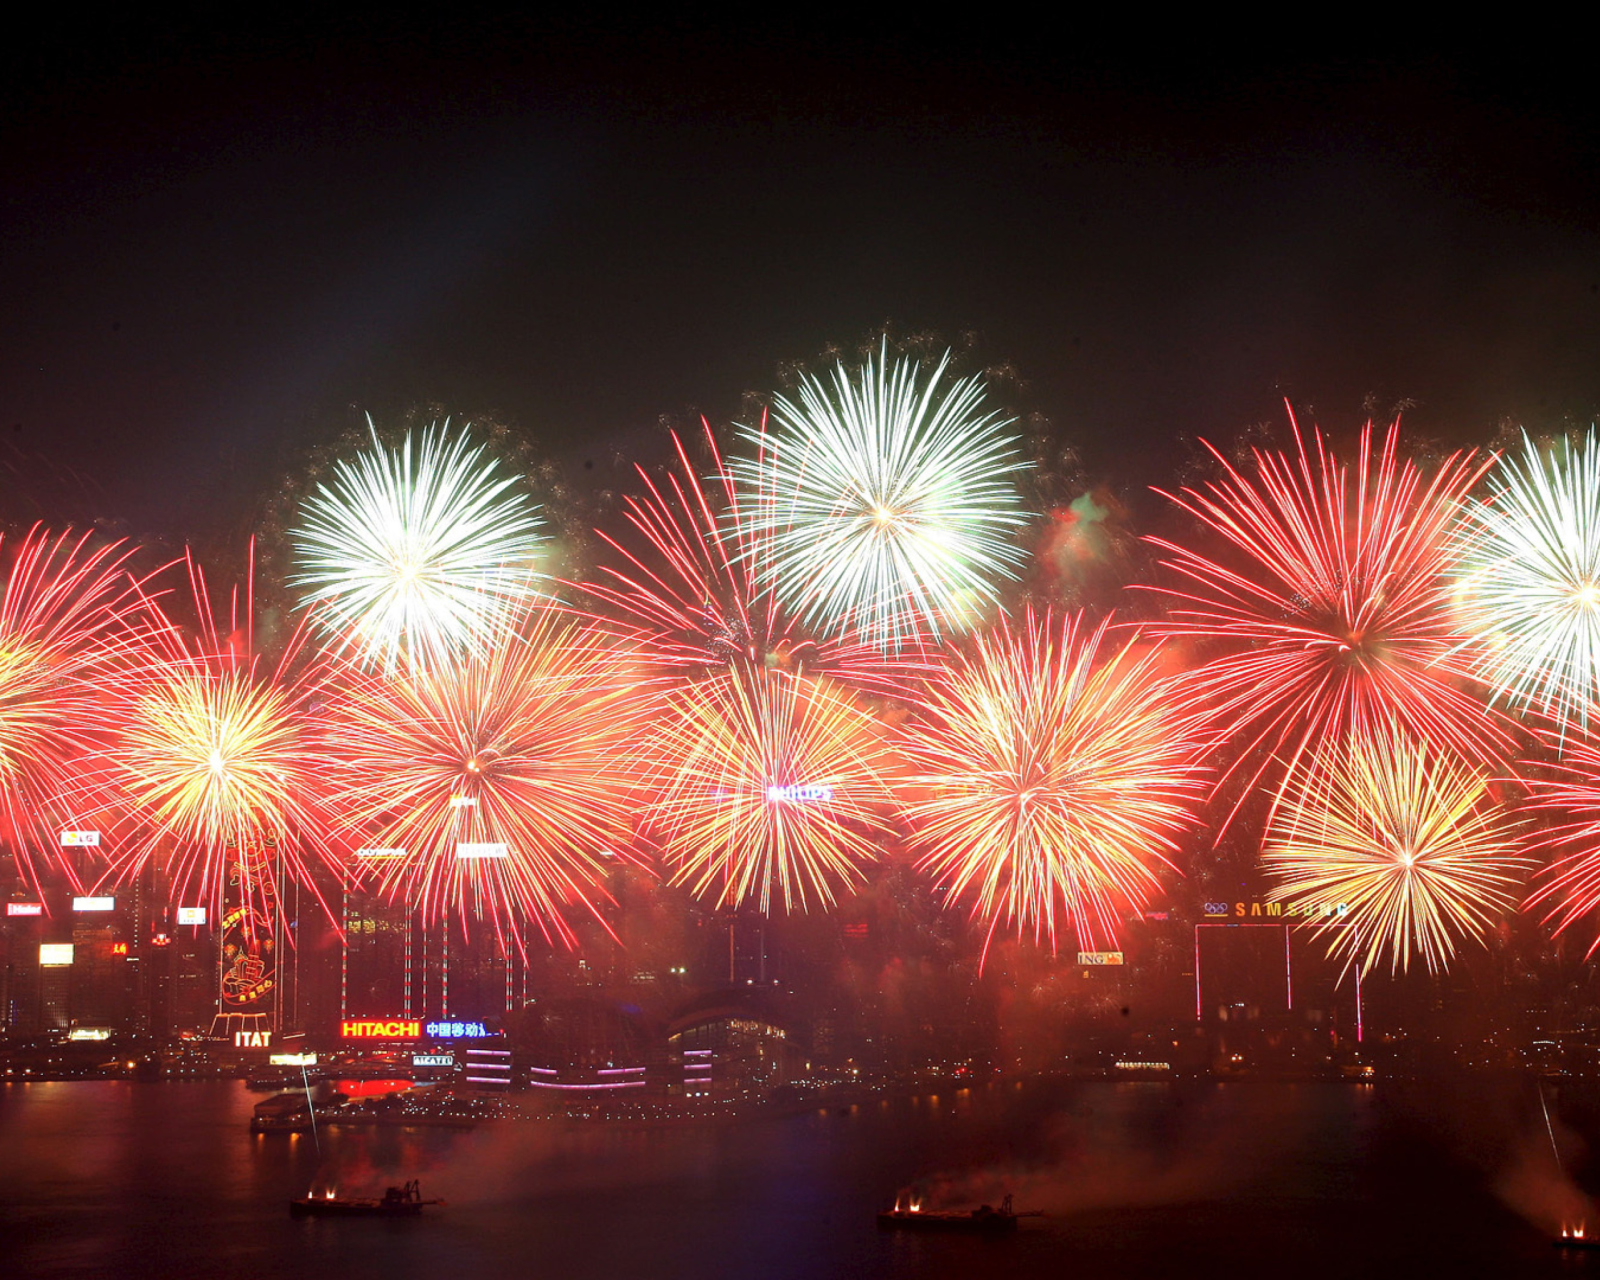 Das Fireworks In Hong Kong Wallpaper 1600x1280